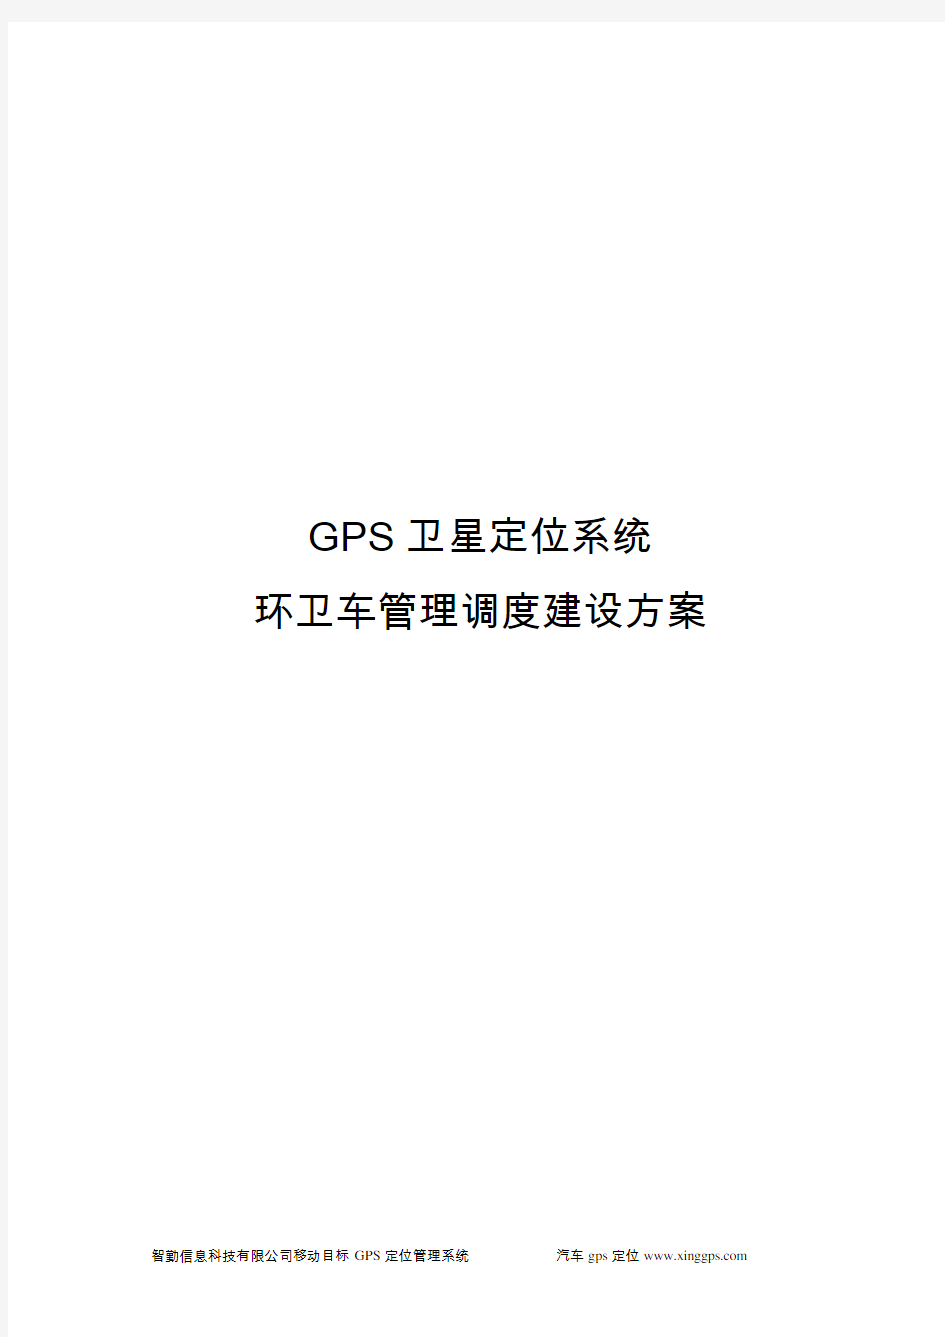 环卫车辆GPS监控系统建设方案